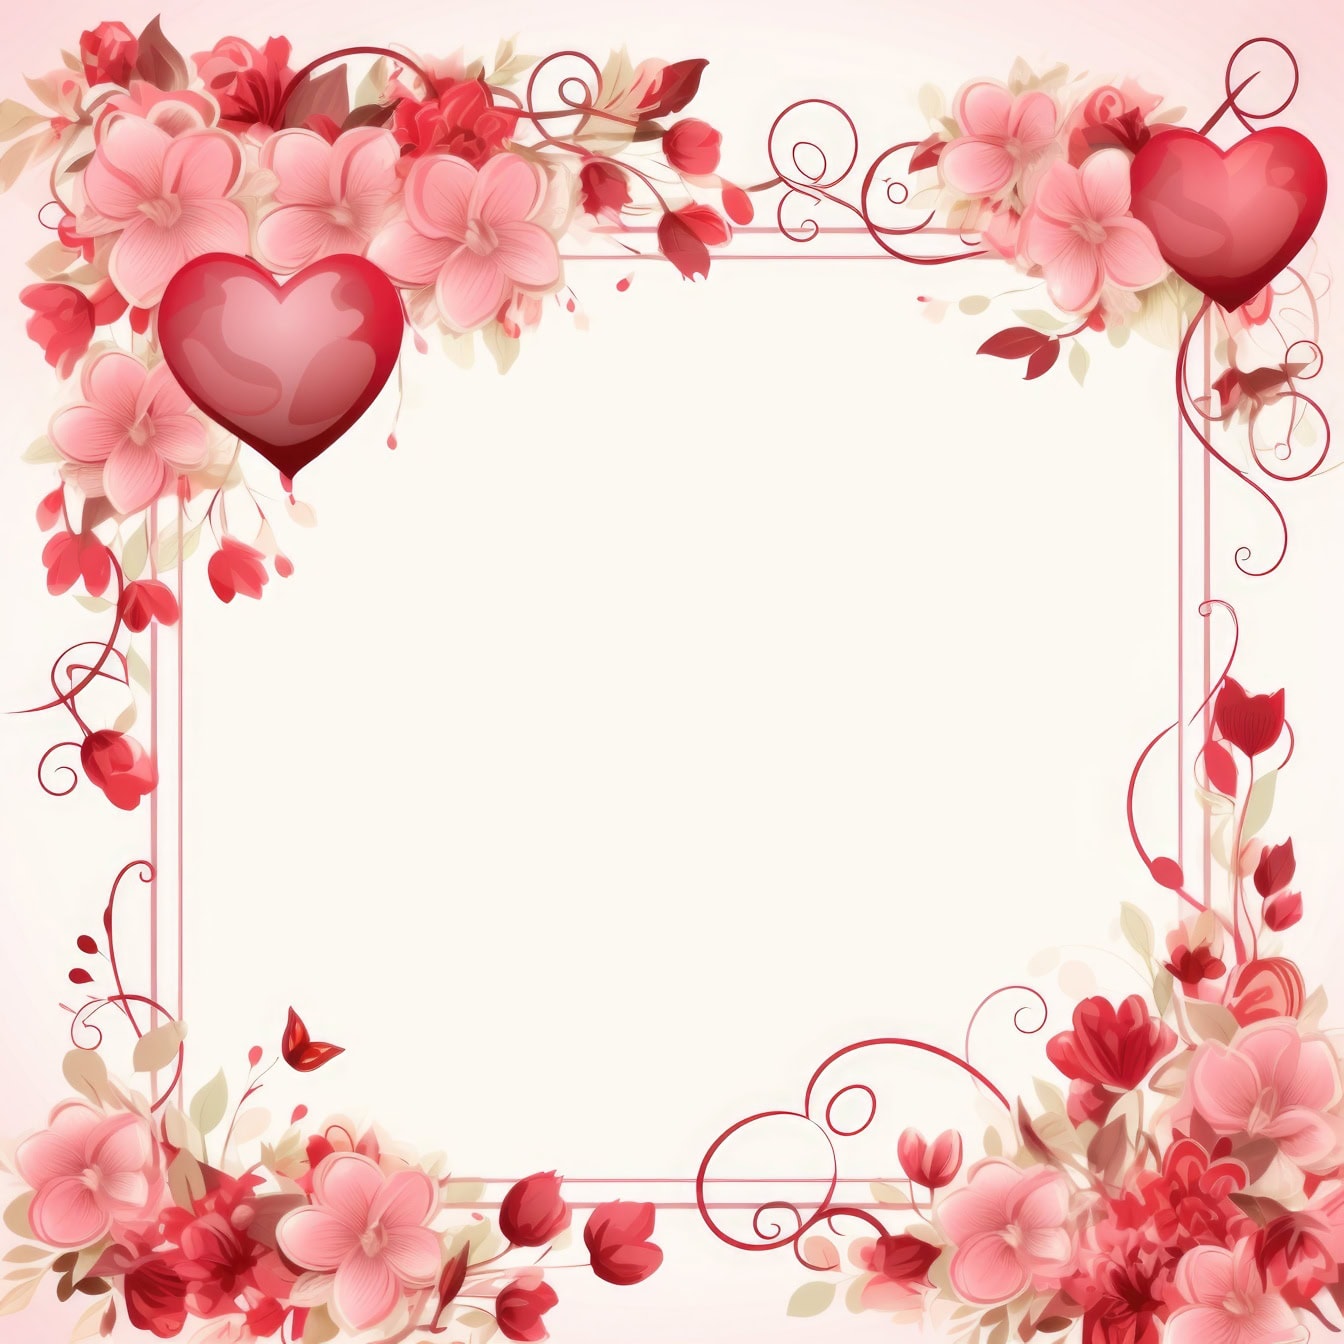 Шаблон поздравительной открытки ко Дню святого Валентина с рамкой из цветов и сердечек